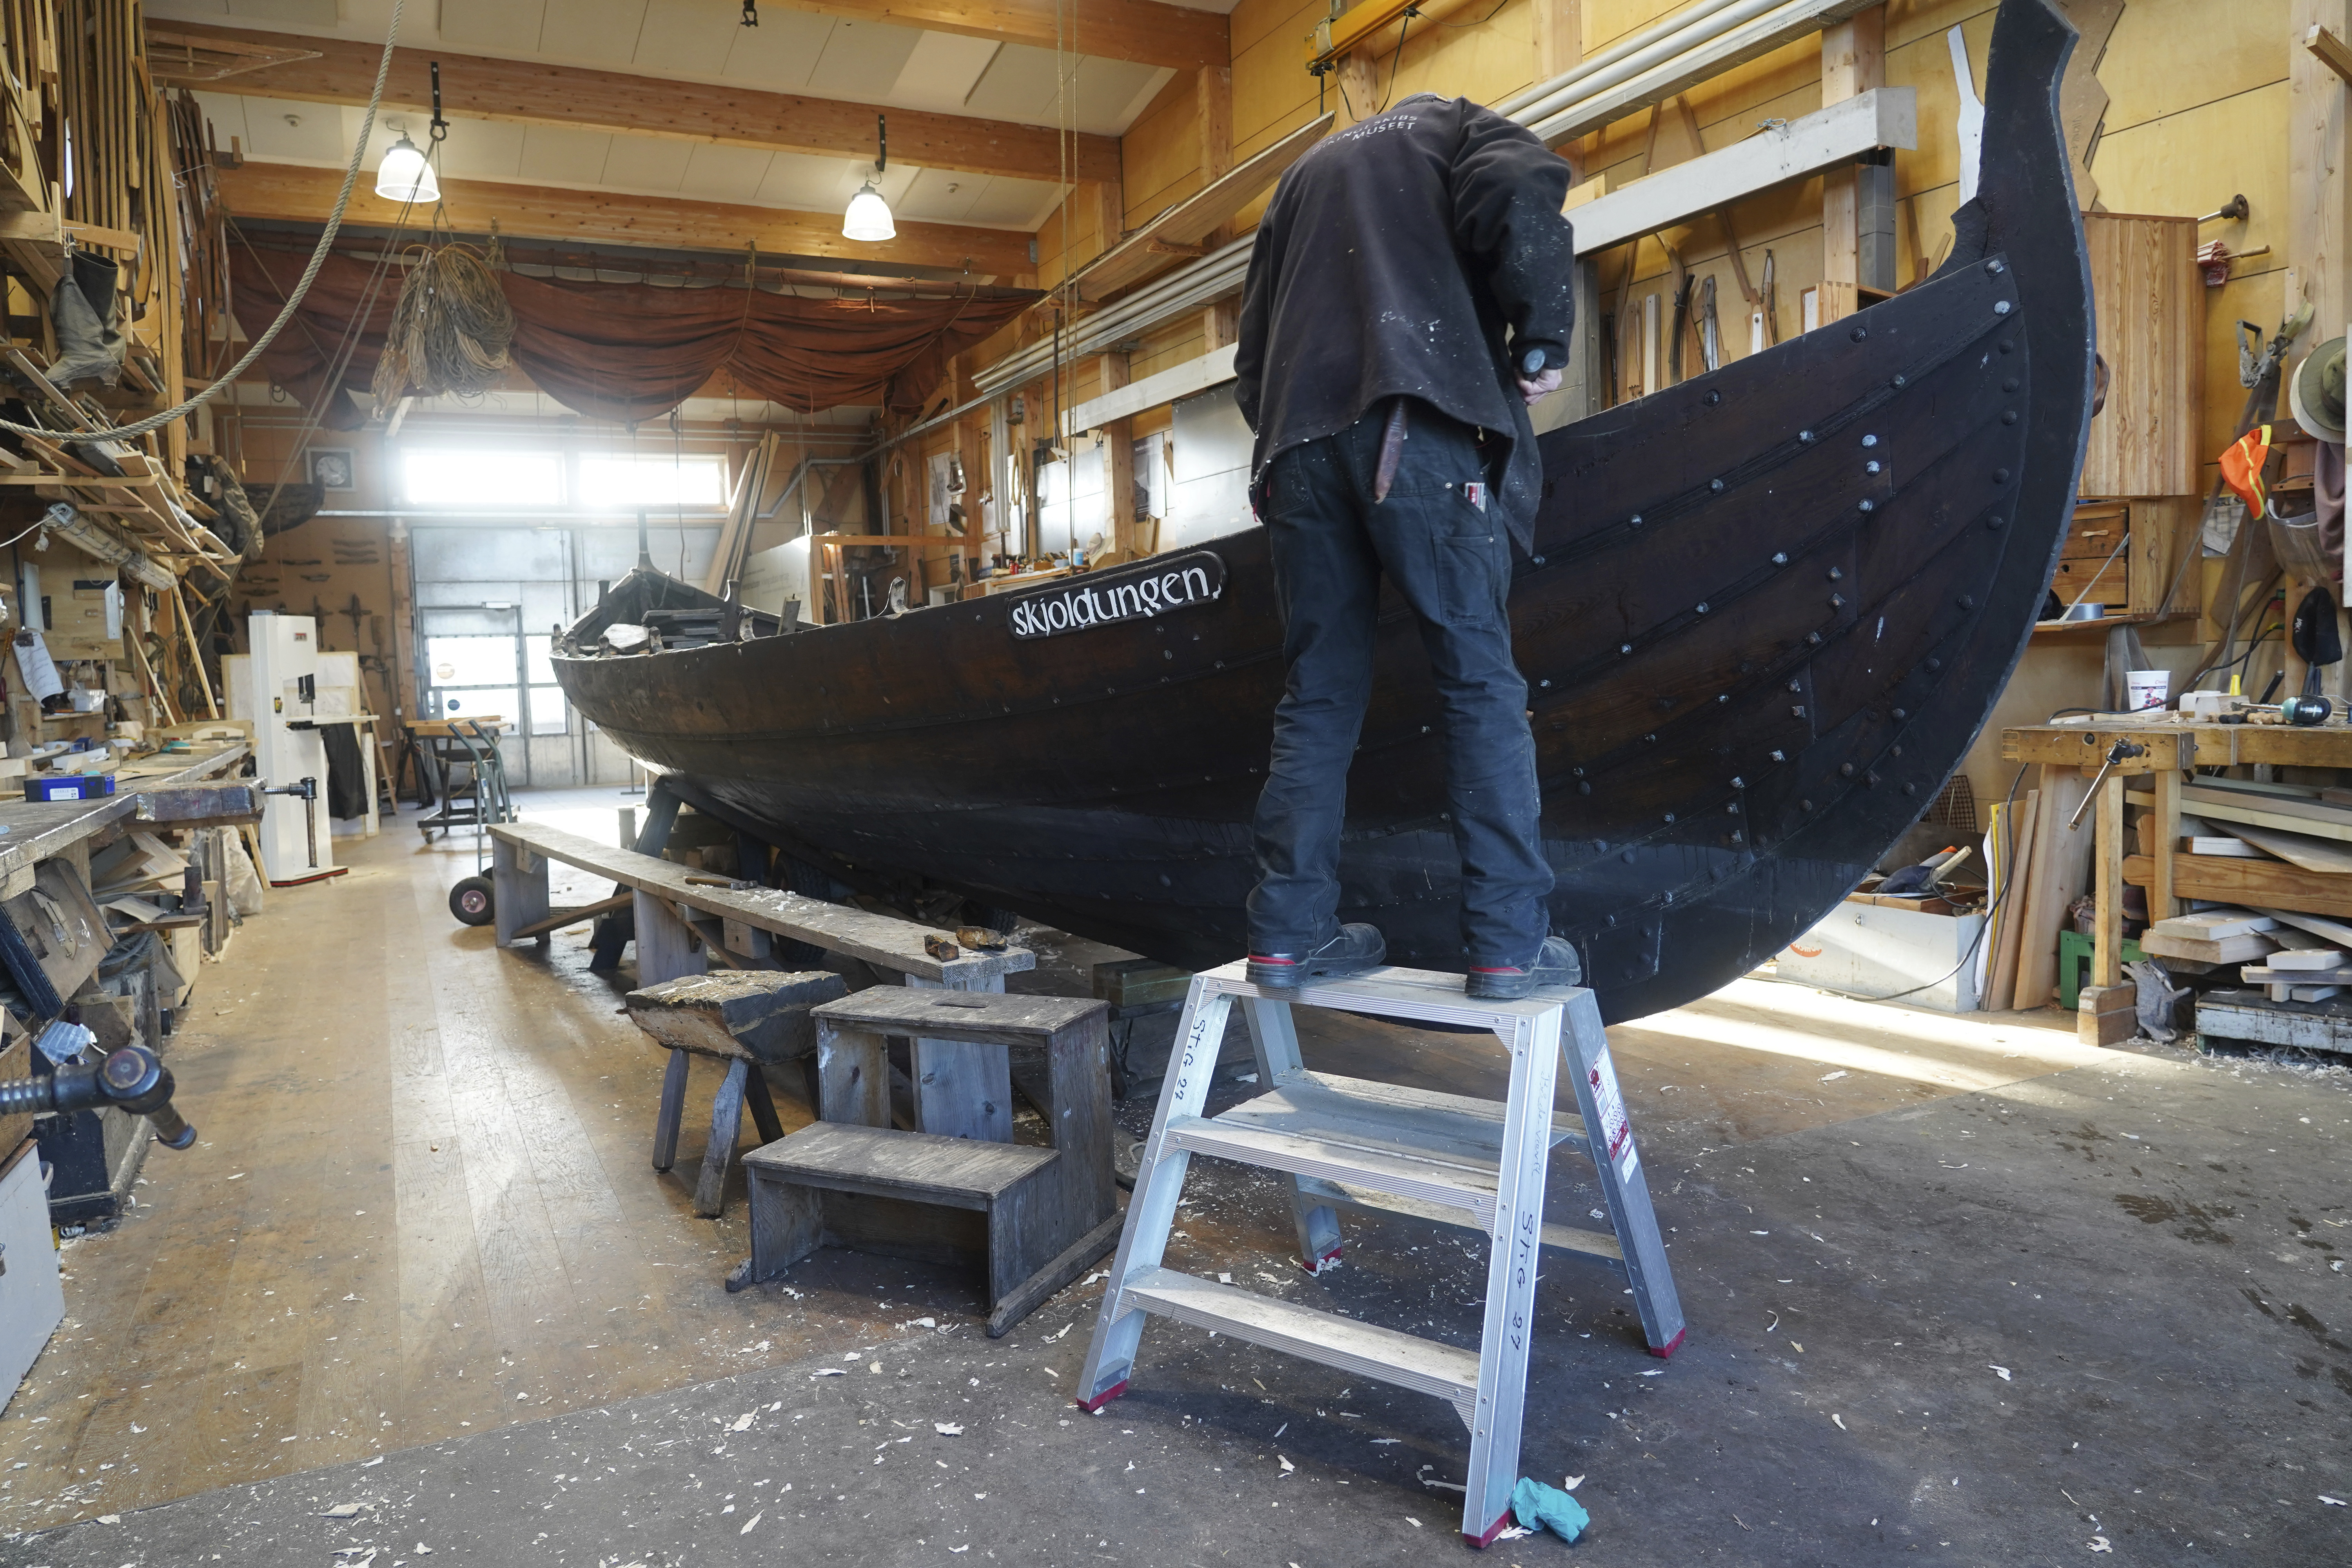 Un hombre repara un bote de remos de madera de 10 metros, construido según la tradición nórdica de los botes de escoria, en el astillero del Museo de Barcos Vikingos. Roskilde, Dinamarca, lunes 17 de enero de 2022. (Foto AP/James Brooks)

